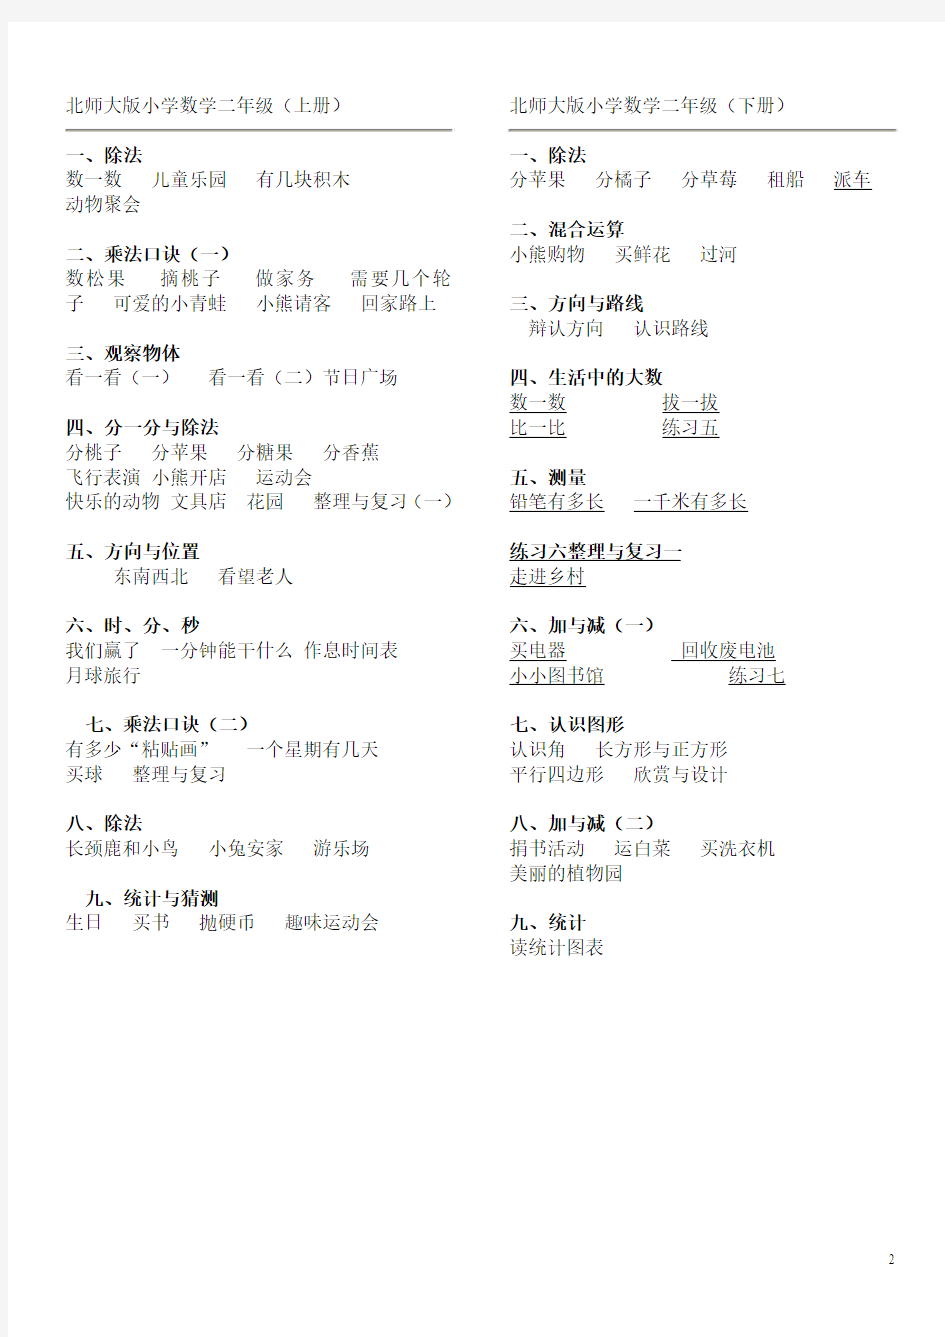 (完整word版)2019年最新最全 北师大版小学数学教材目录--详细版